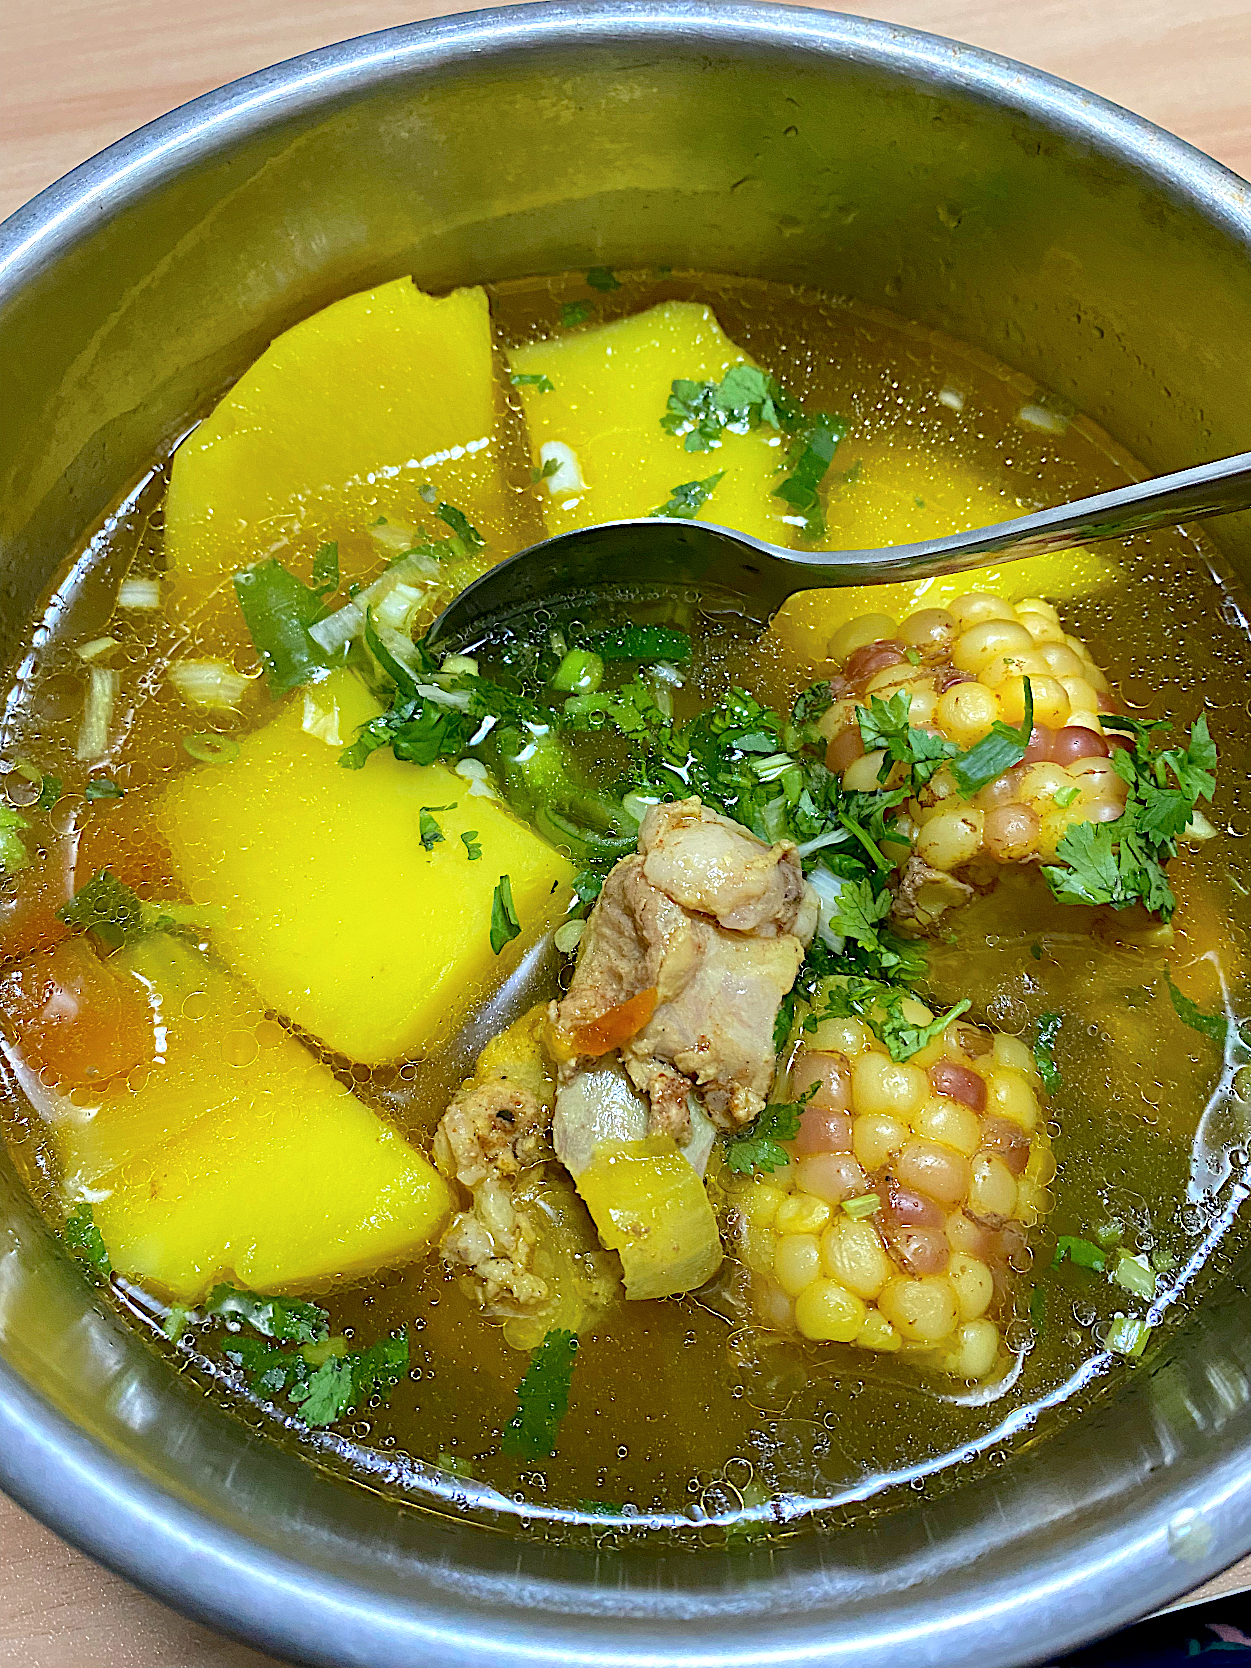 Corn and potato soup